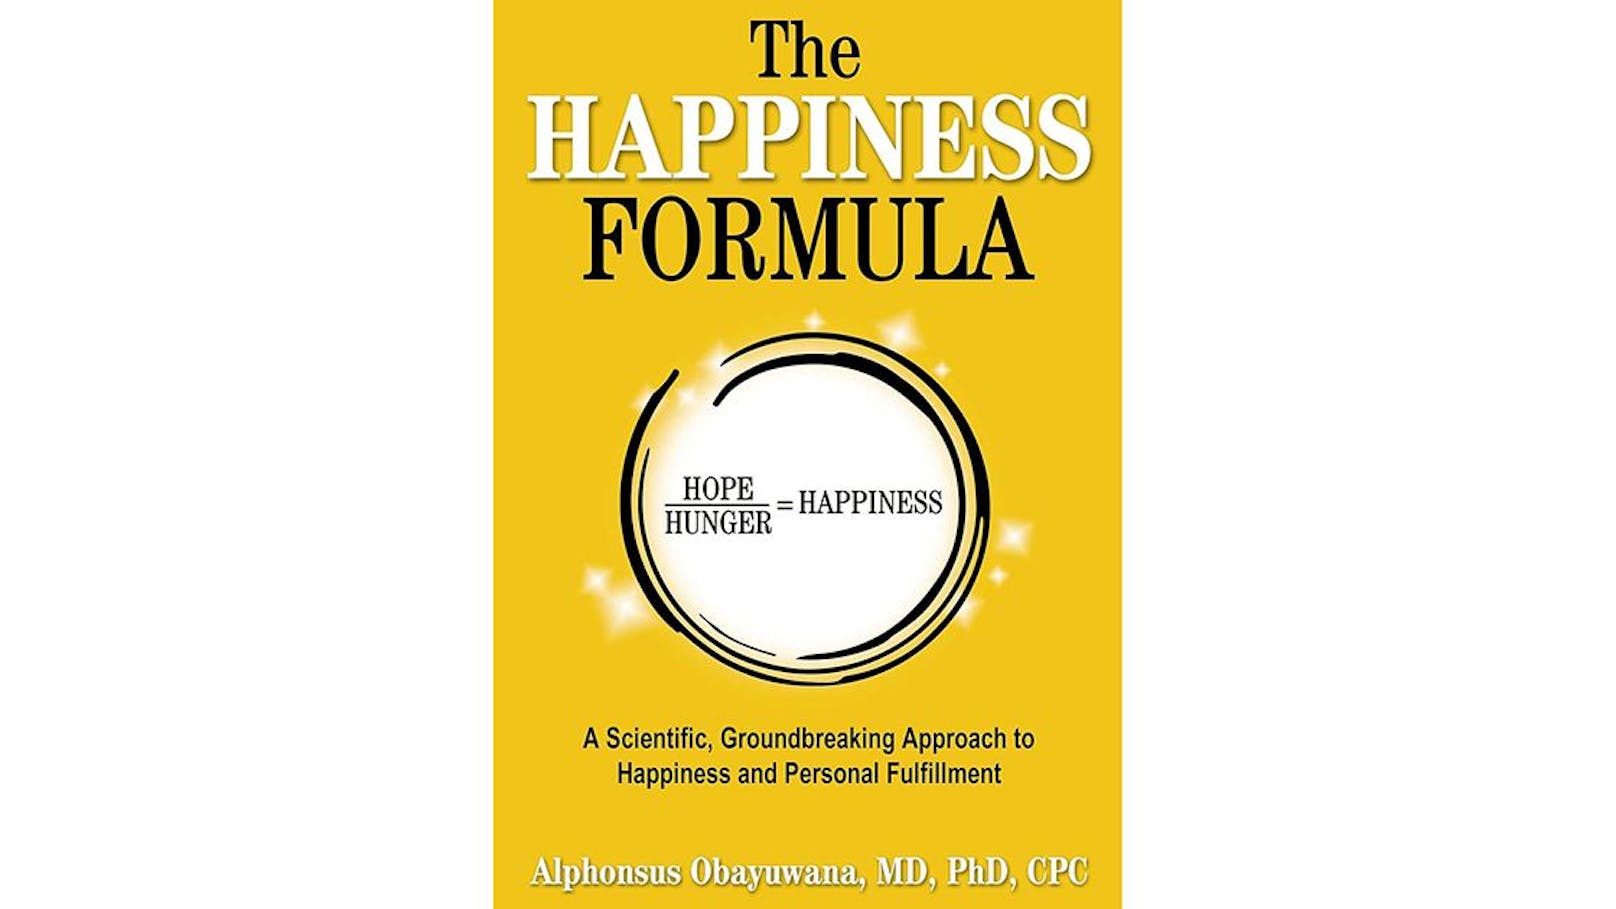 "The Happiness Formula" ist ab 12 März um rund 16 Euro erhältlich.